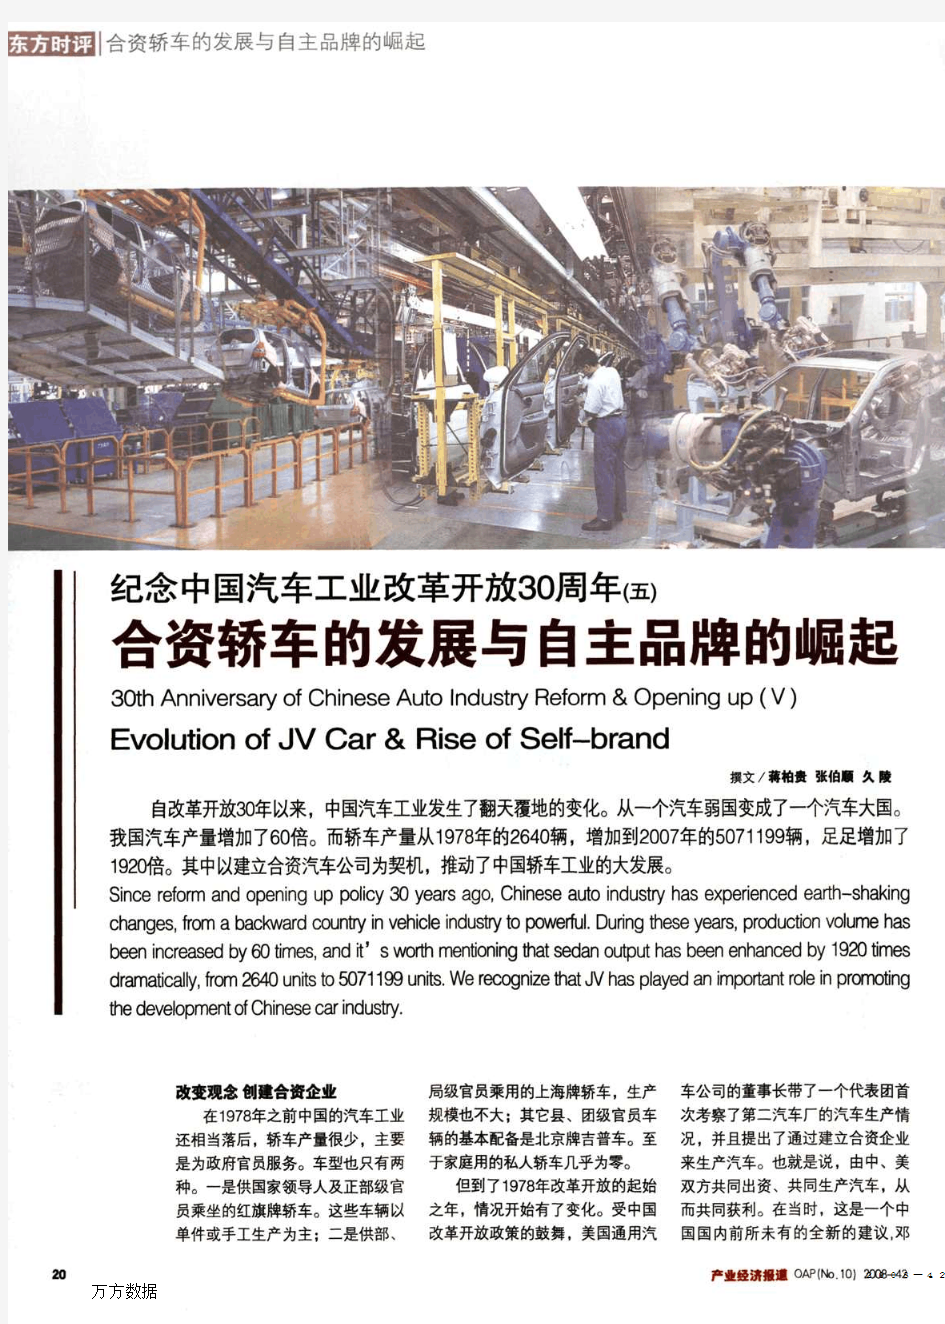 纪念中国汽车工业改革开放30周年(五)合资轿车的发展与自主品牌的崛起